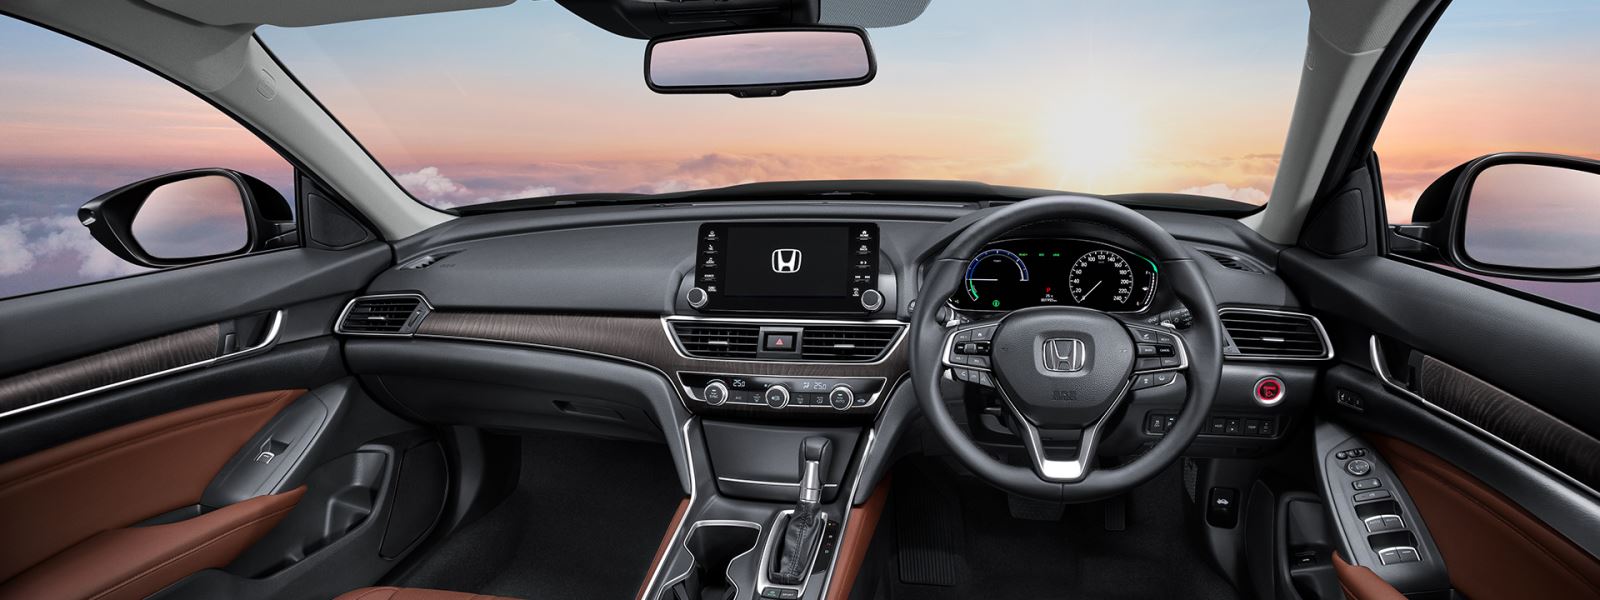 ĐÁNH GIÁ XE] Honda Accord 2020 - Dẫn đầu phân khúc?